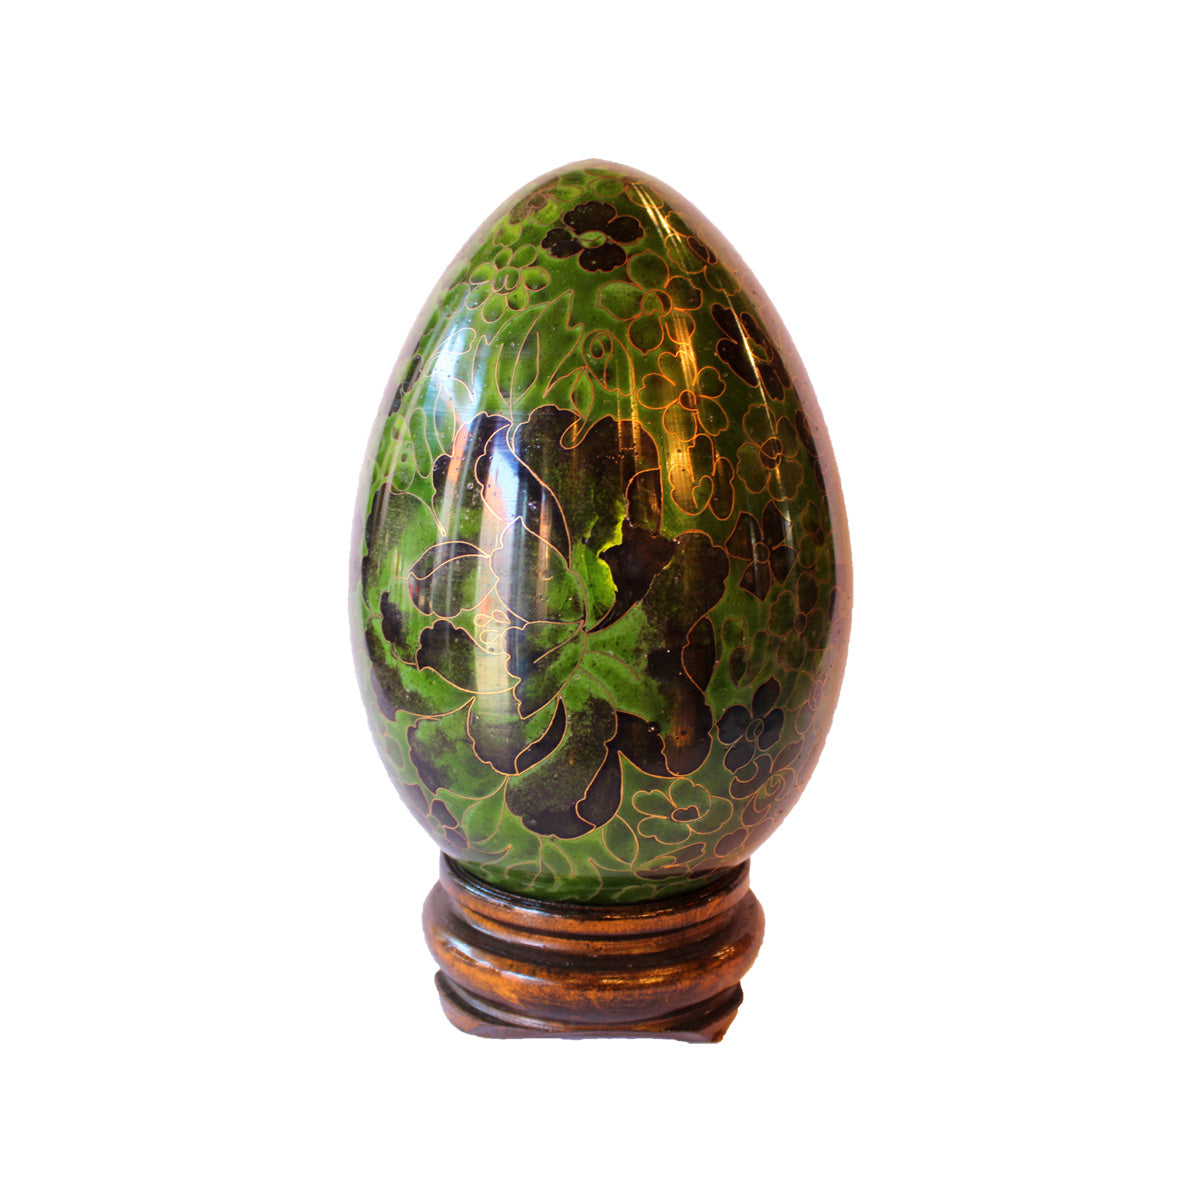 Cloisonne ægget er holdt i diverse grønne og sorte nuancer